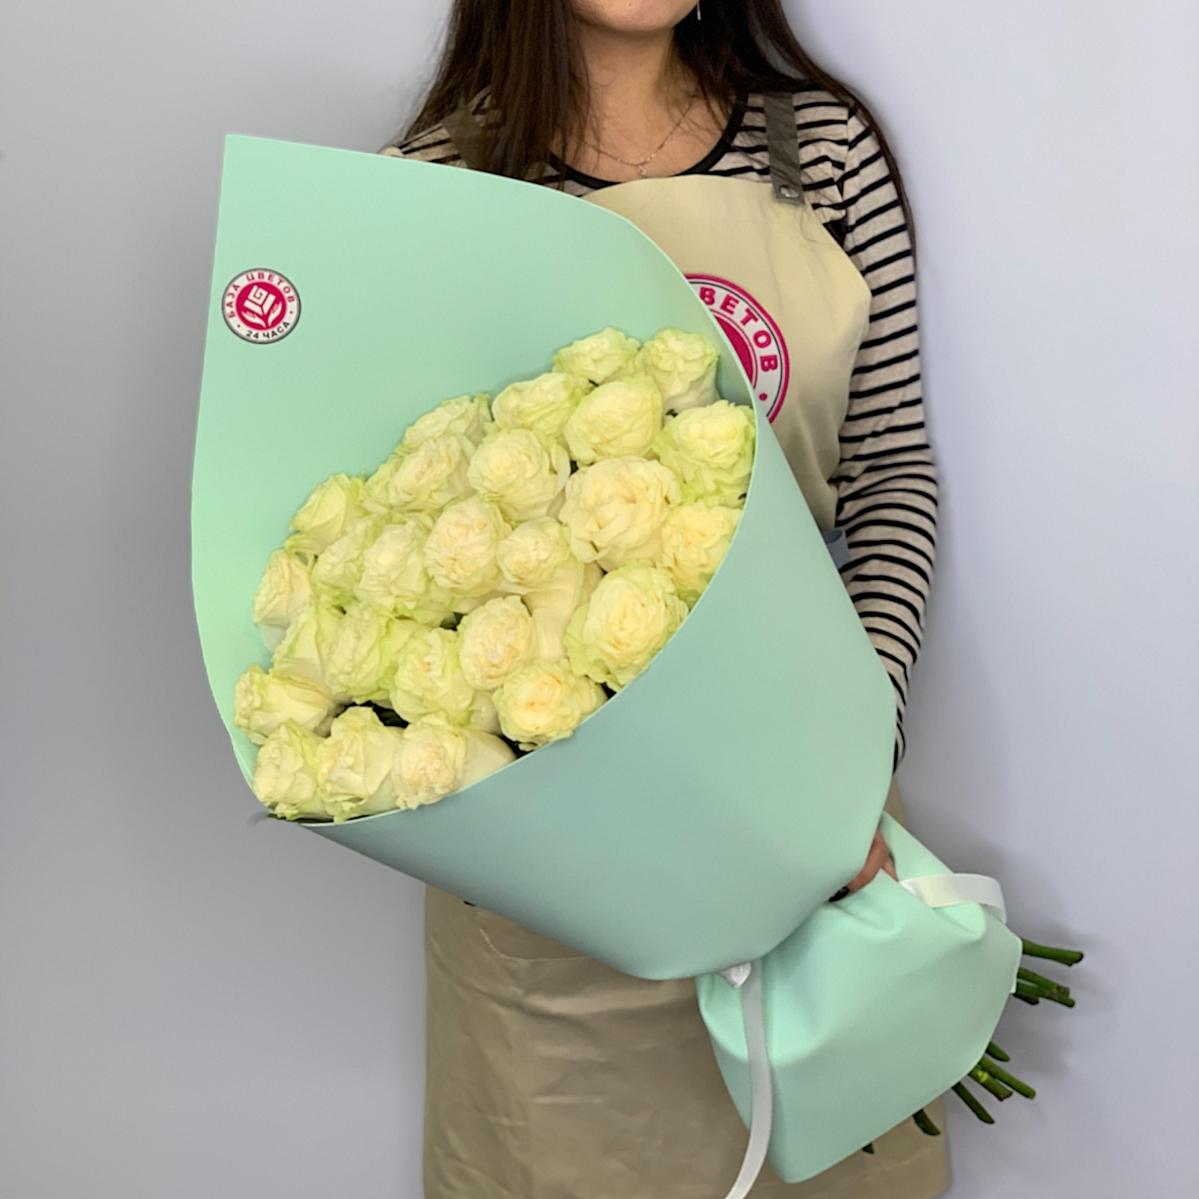 Букеты из белых роз 40 см (Эквадор) (код товара  700vlad)